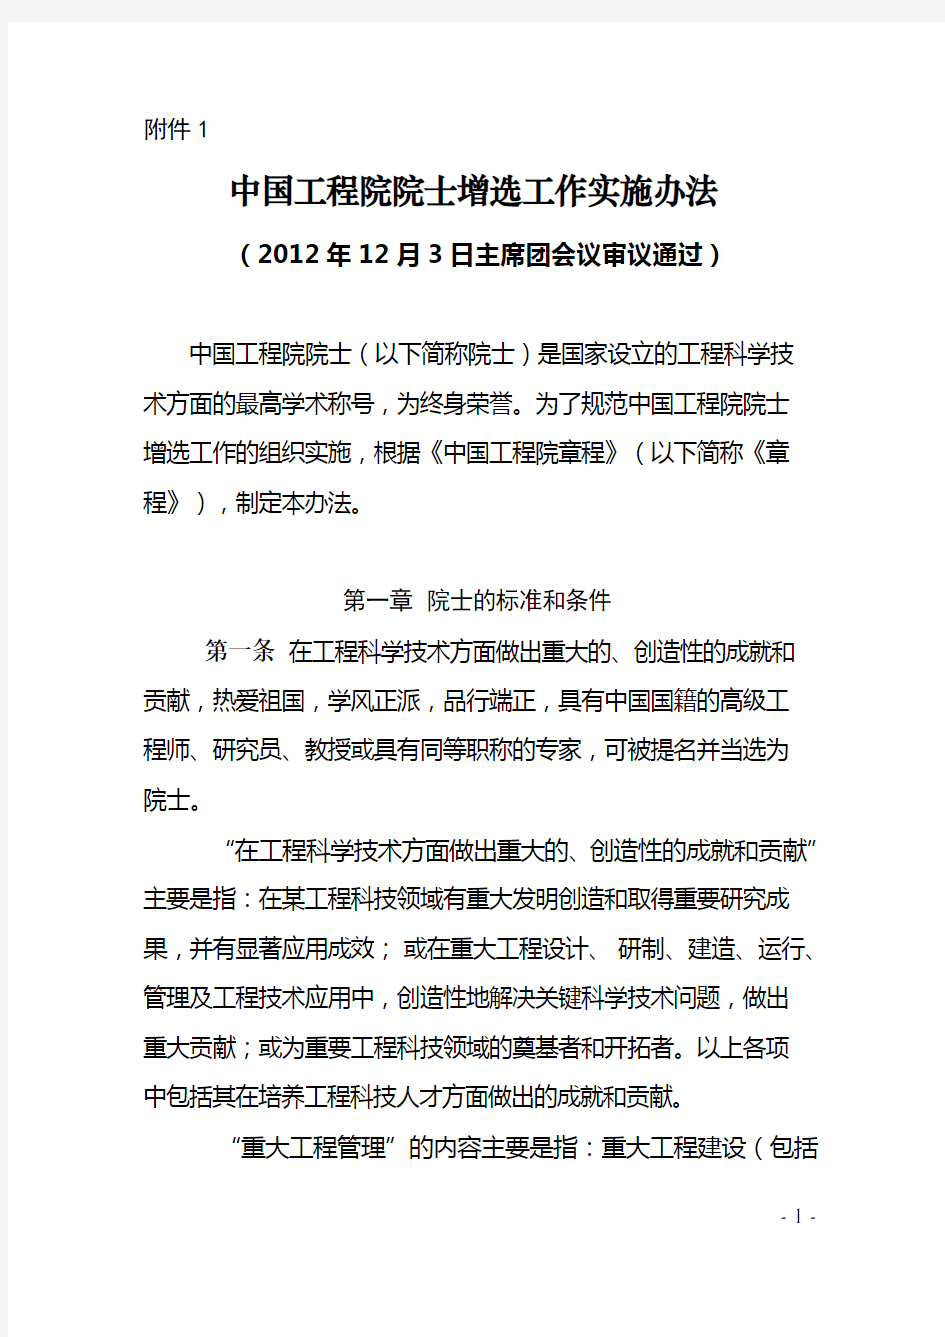 中国工程院院士增选工作实施办法